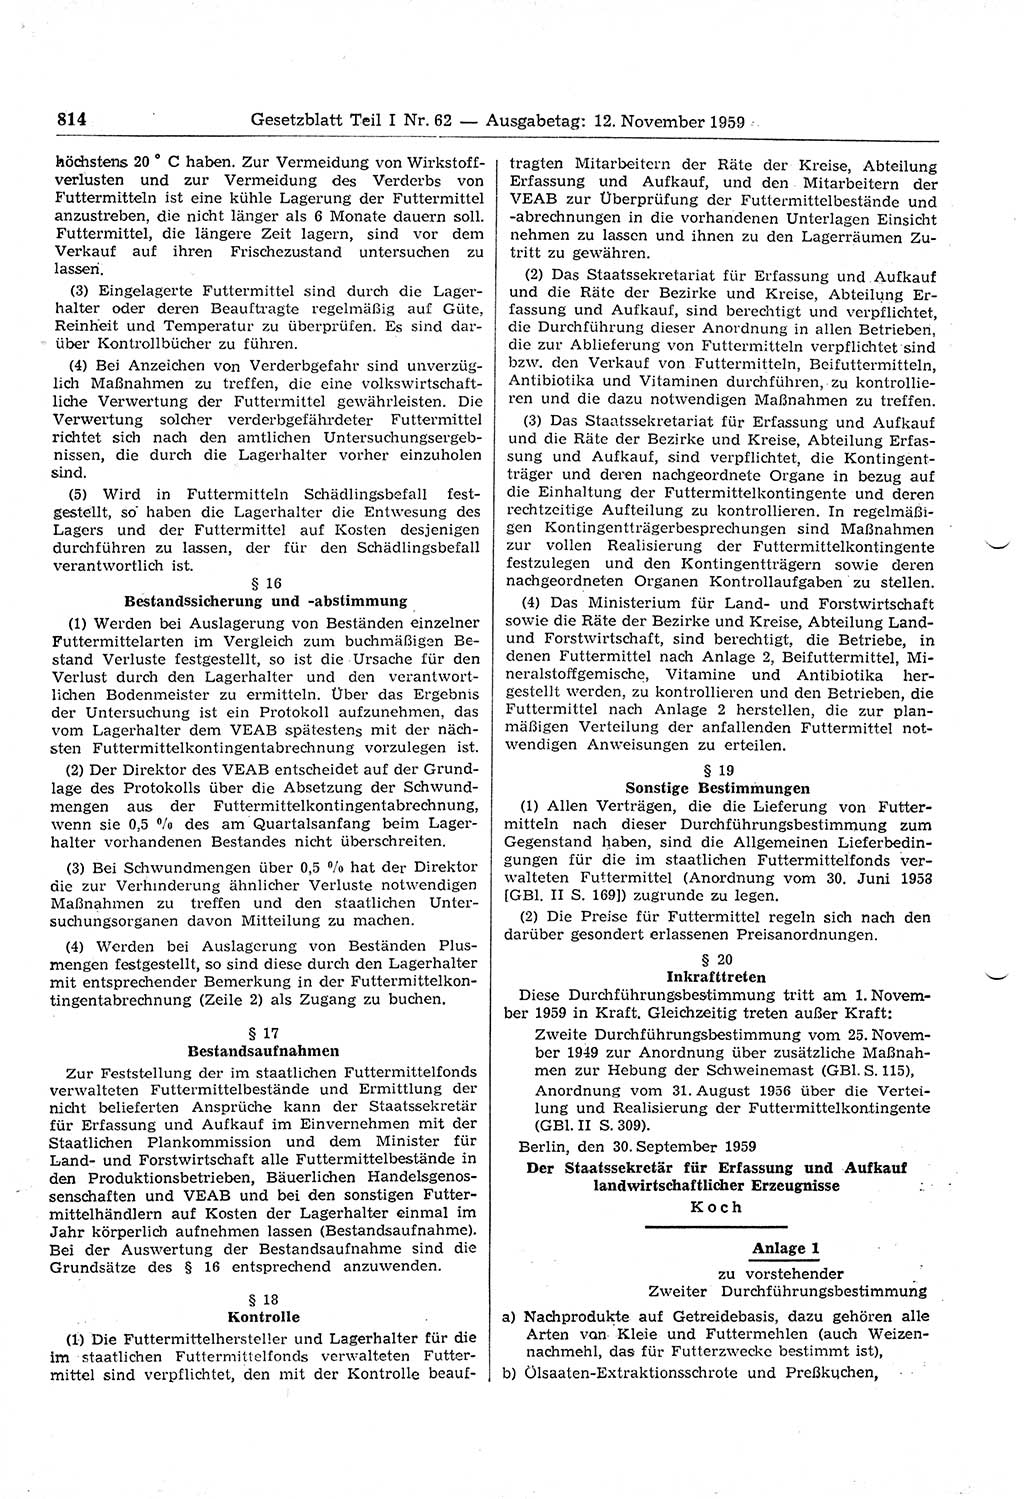 Gesetzblatt (GBl.) der Deutschen Demokratischen Republik (DDR) Teil Ⅰ 1959, Seite 814 (GBl. DDR Ⅰ 1959, S. 814)